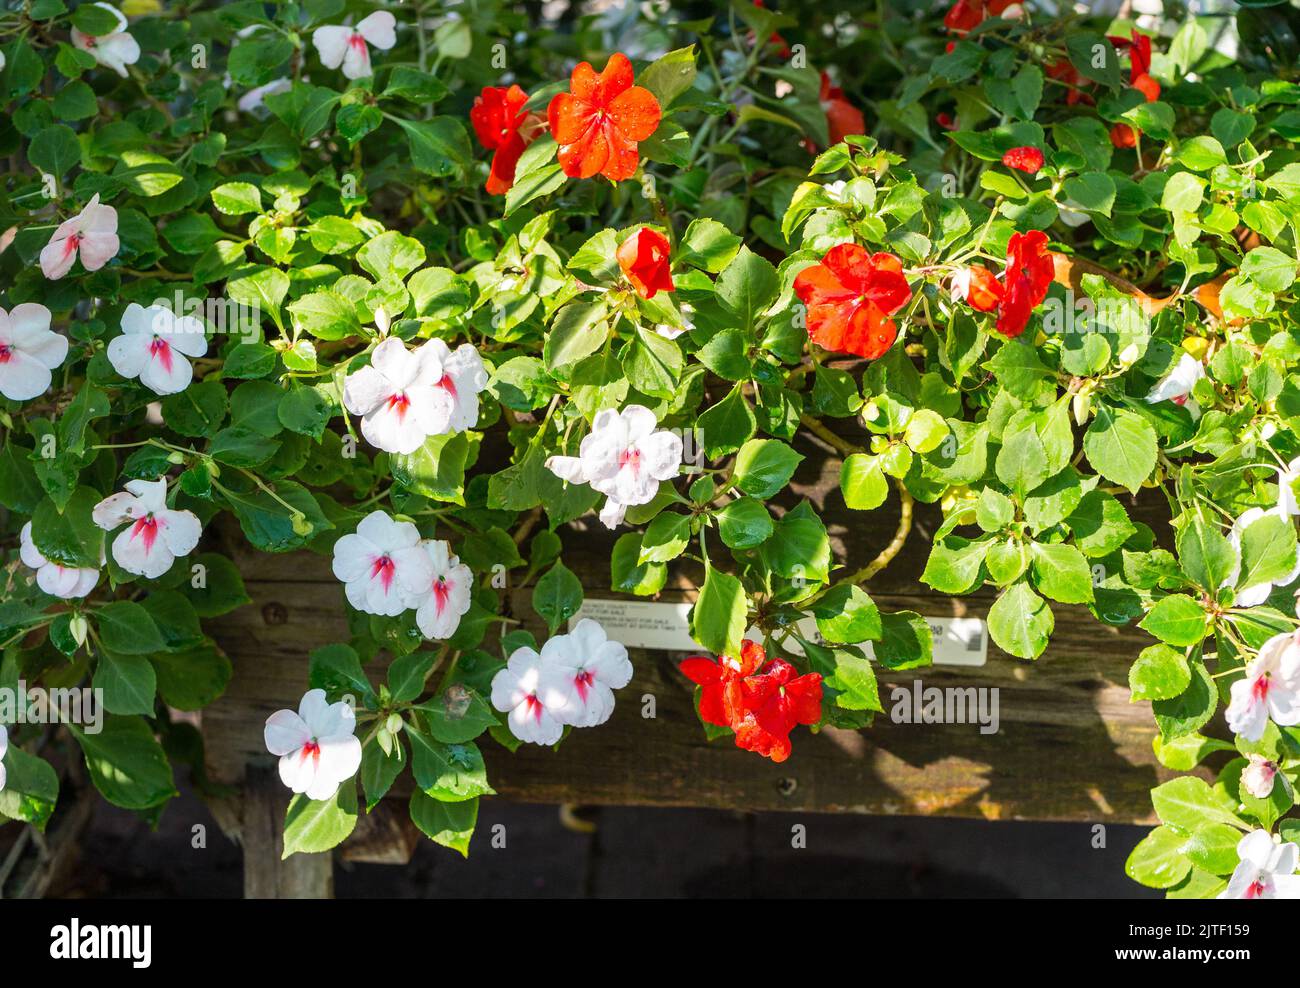 Les fleurs d'Impatiens fleurissent sur une plante dans un conteneur fermé concept jardinage et horticulture Banque D'Images